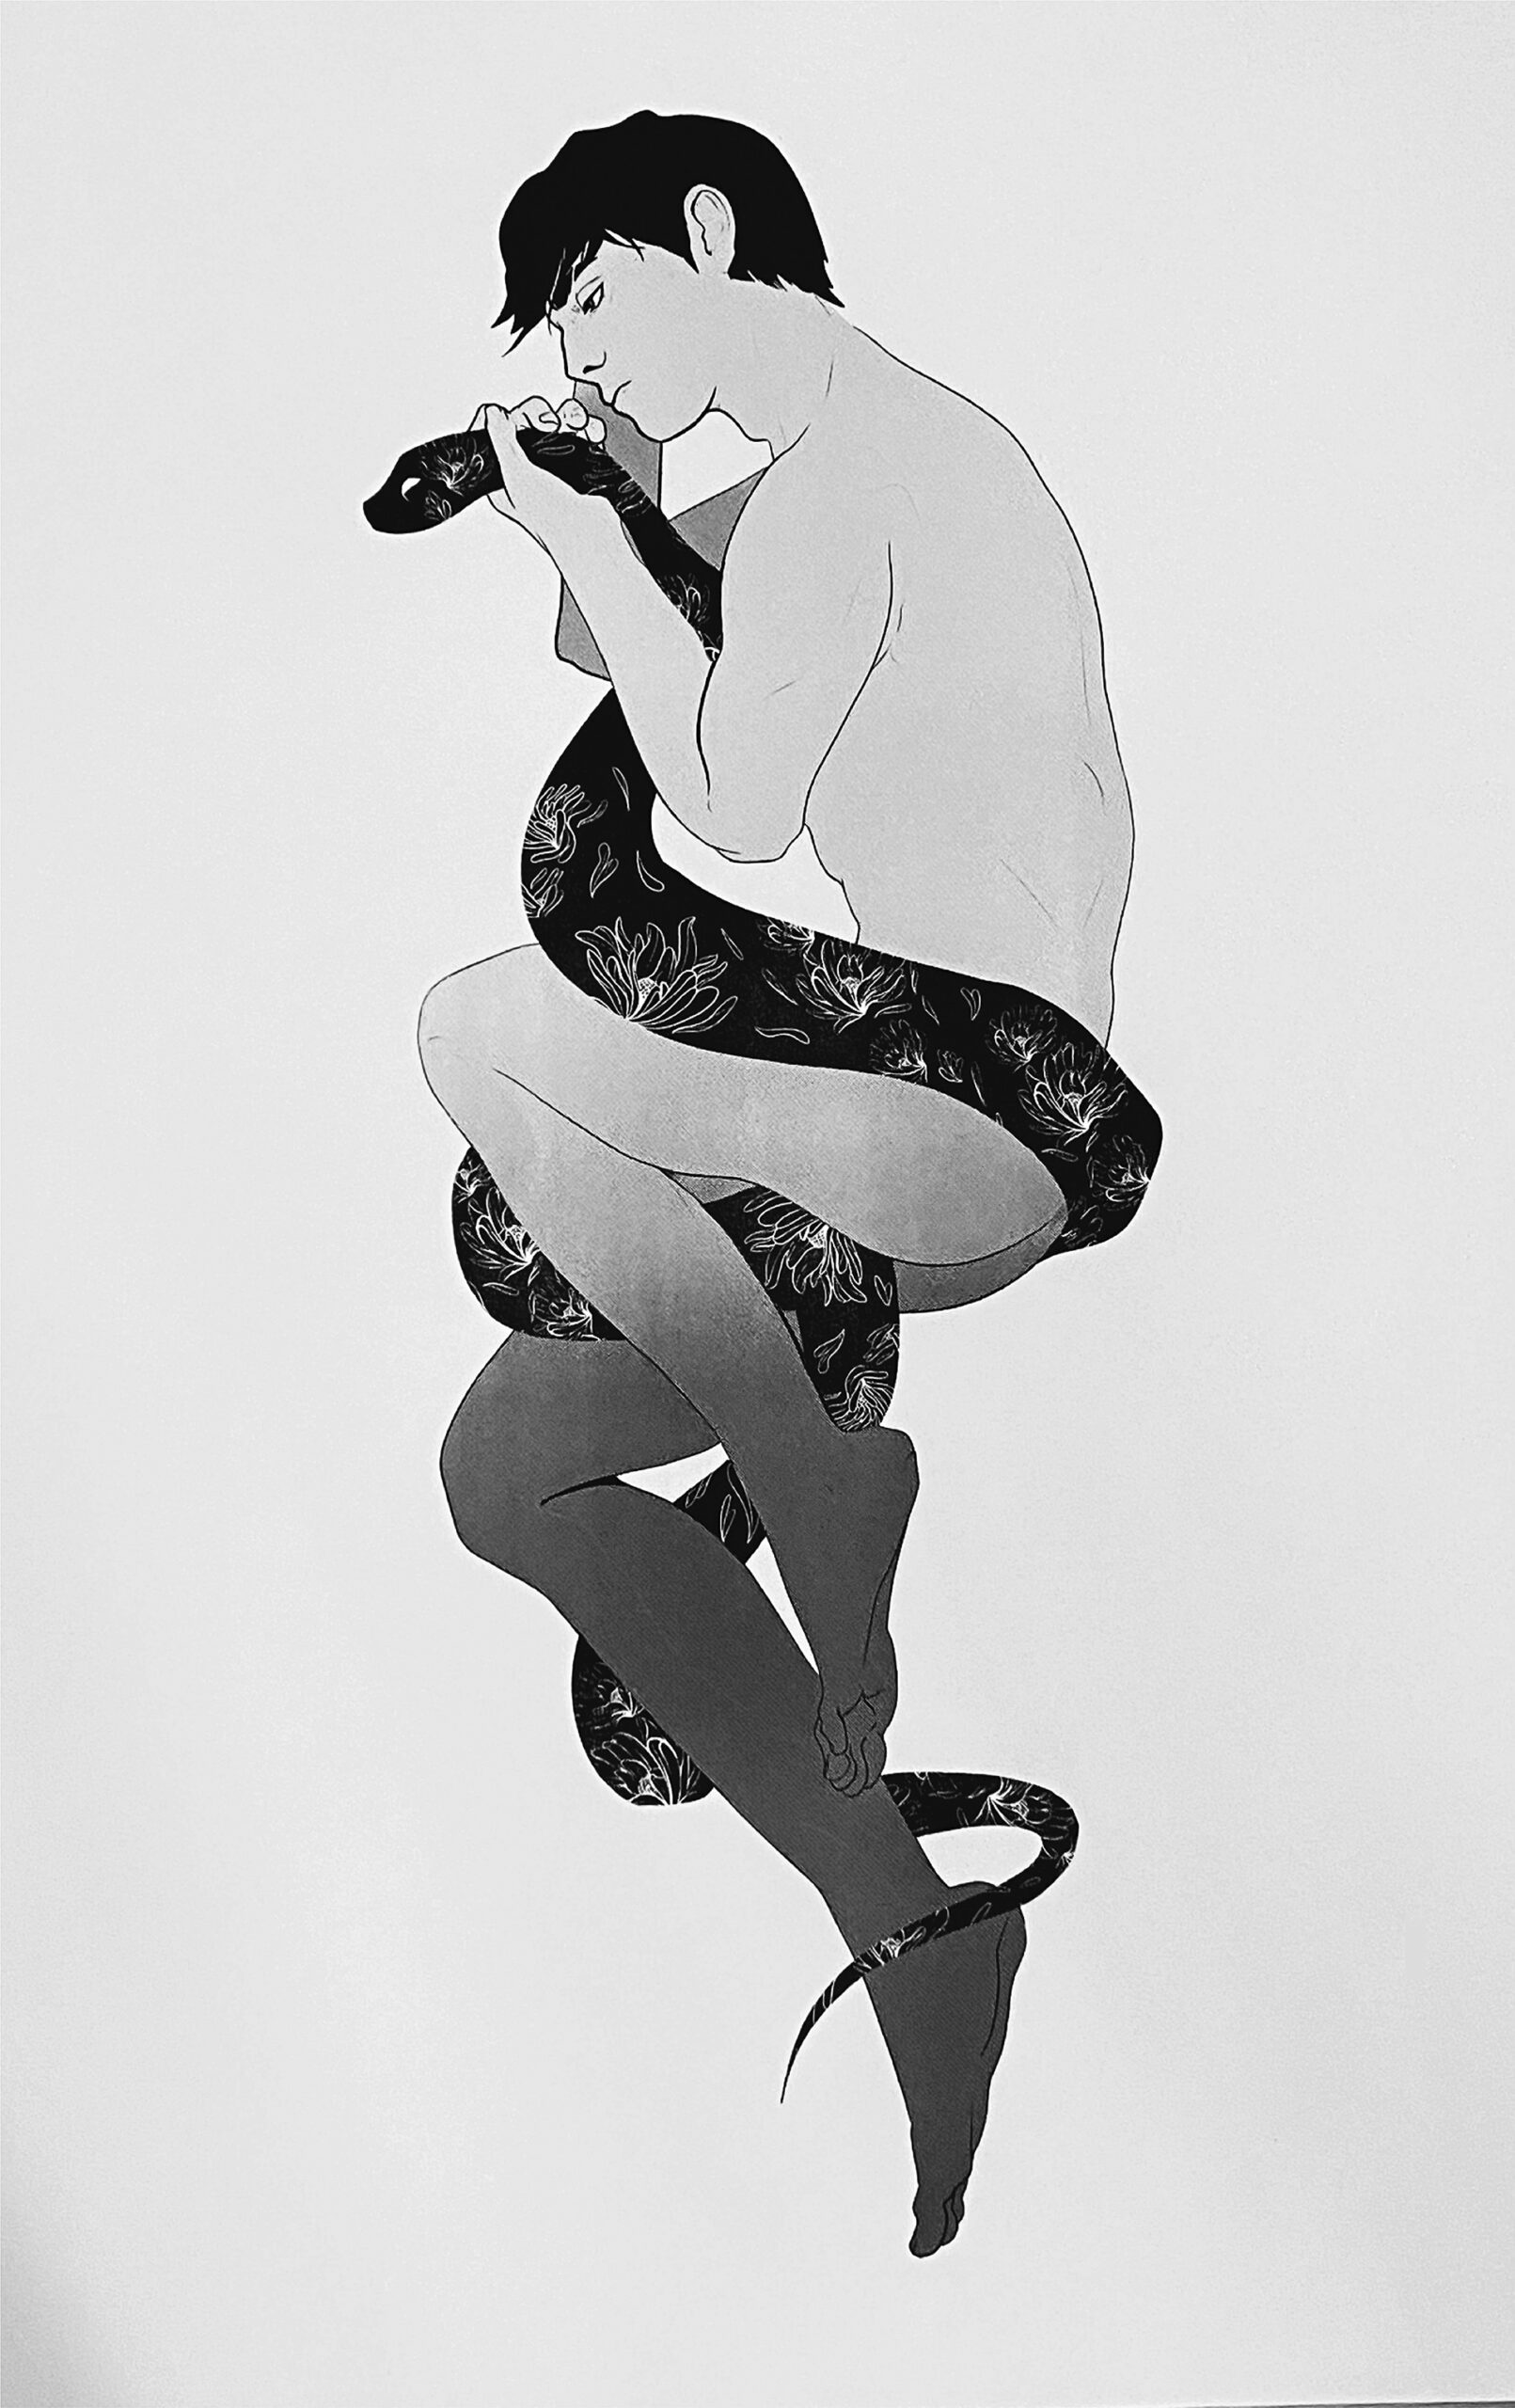 Obraz przedstawia rysunek nagiego mężczyzny splątanego z wężem. Obraz jest czarno biały